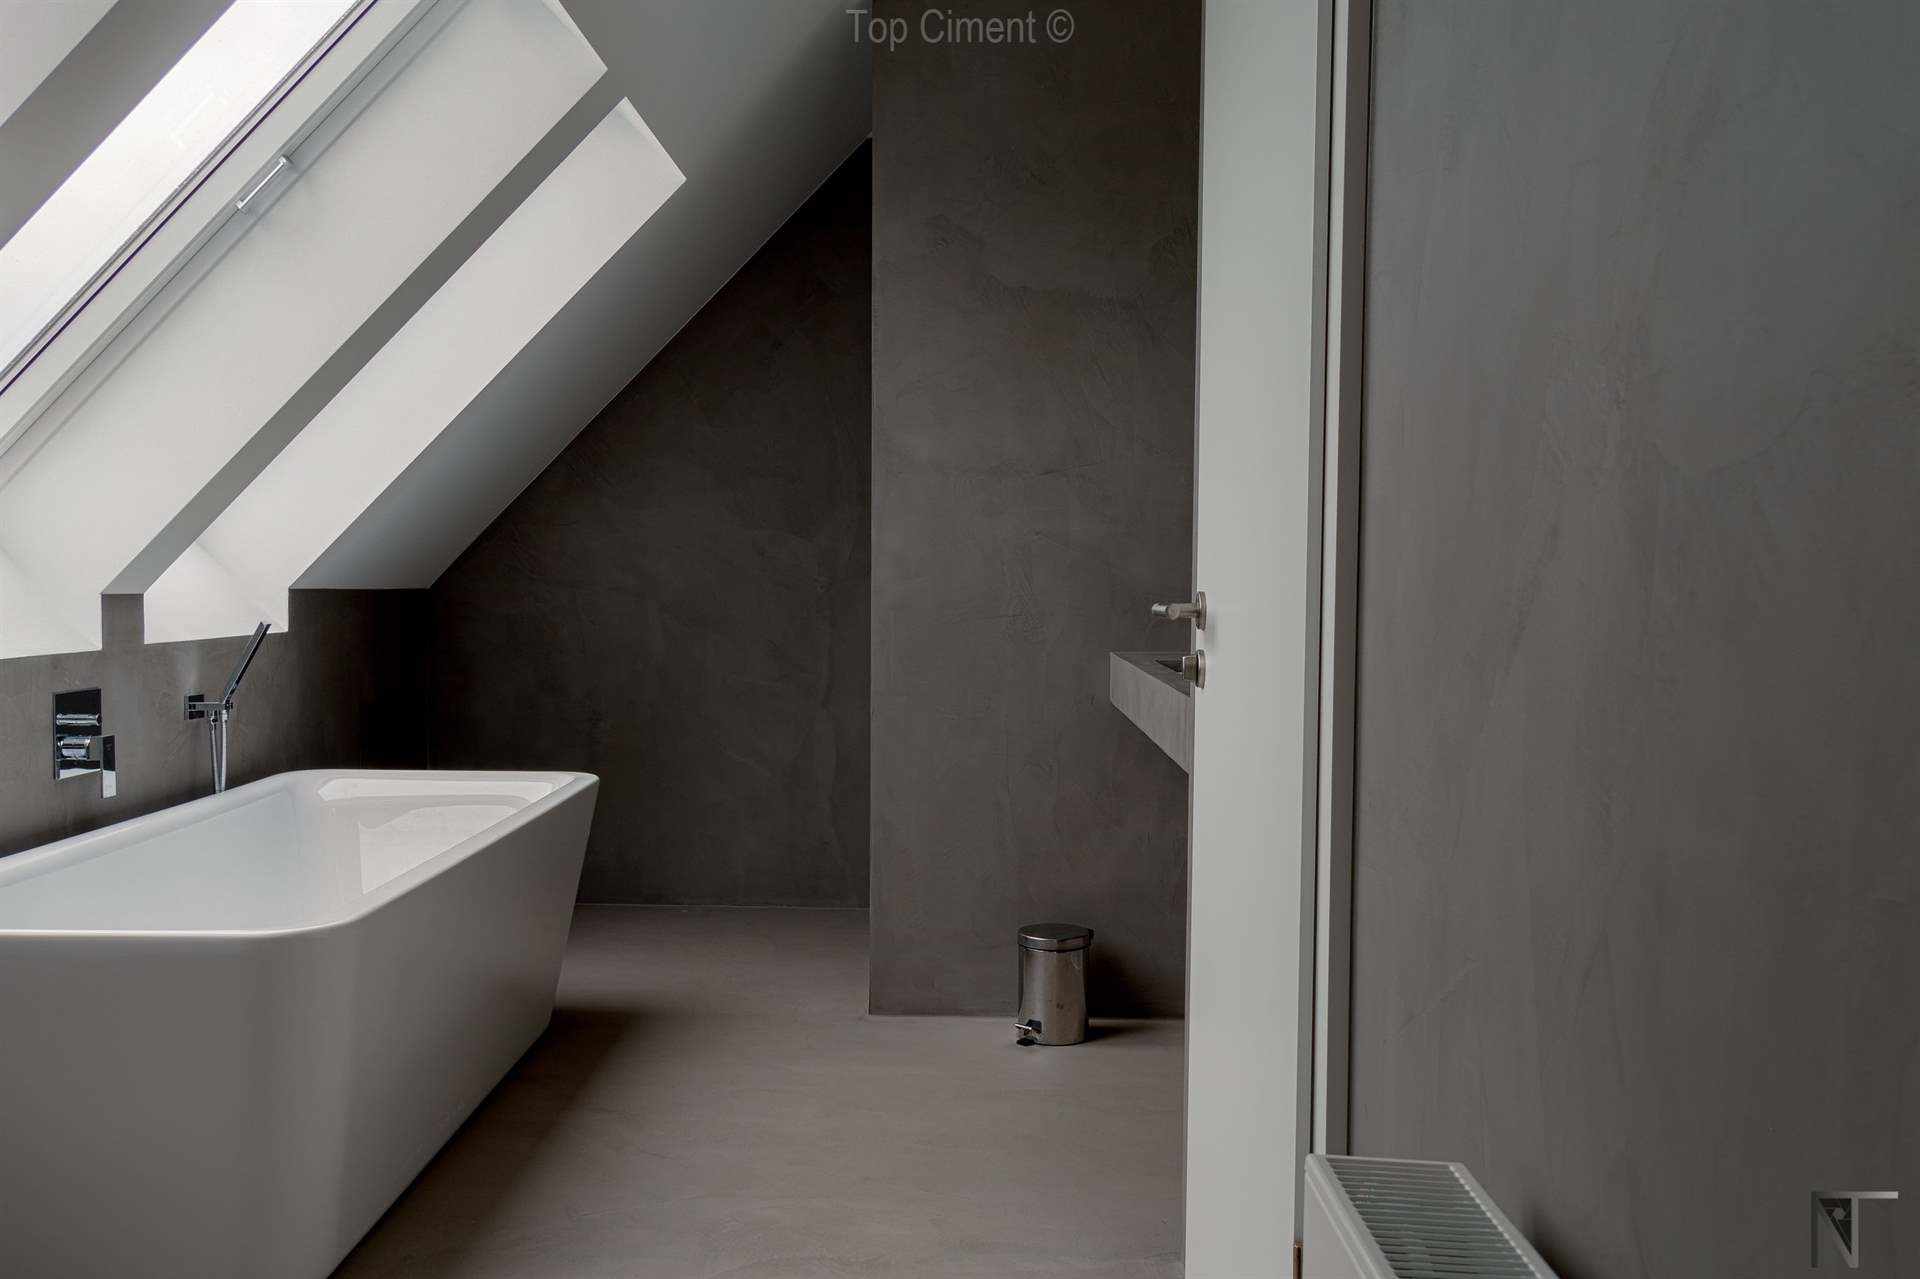 탑시멘트 Microfino 마이크로 시멘트로 리모델링 된 타일 욕실